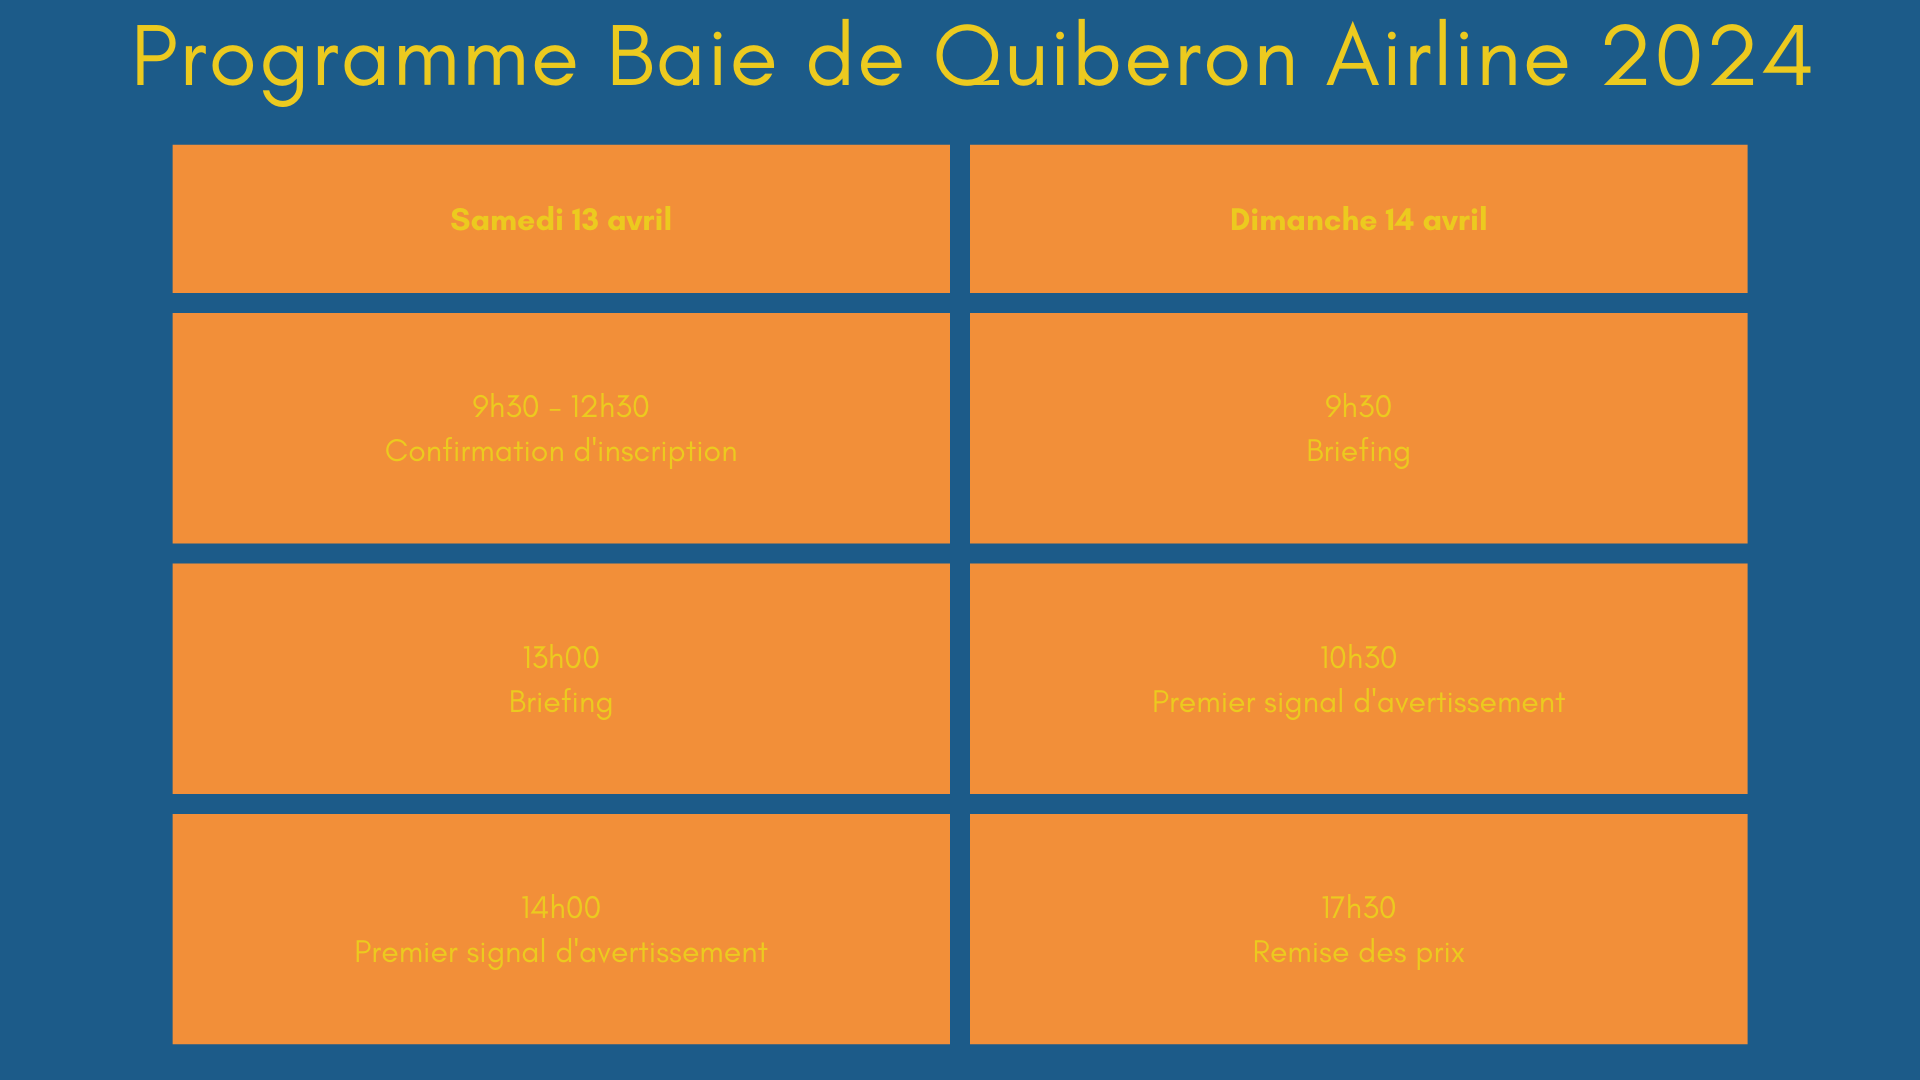 Programme baie de quiberon airline